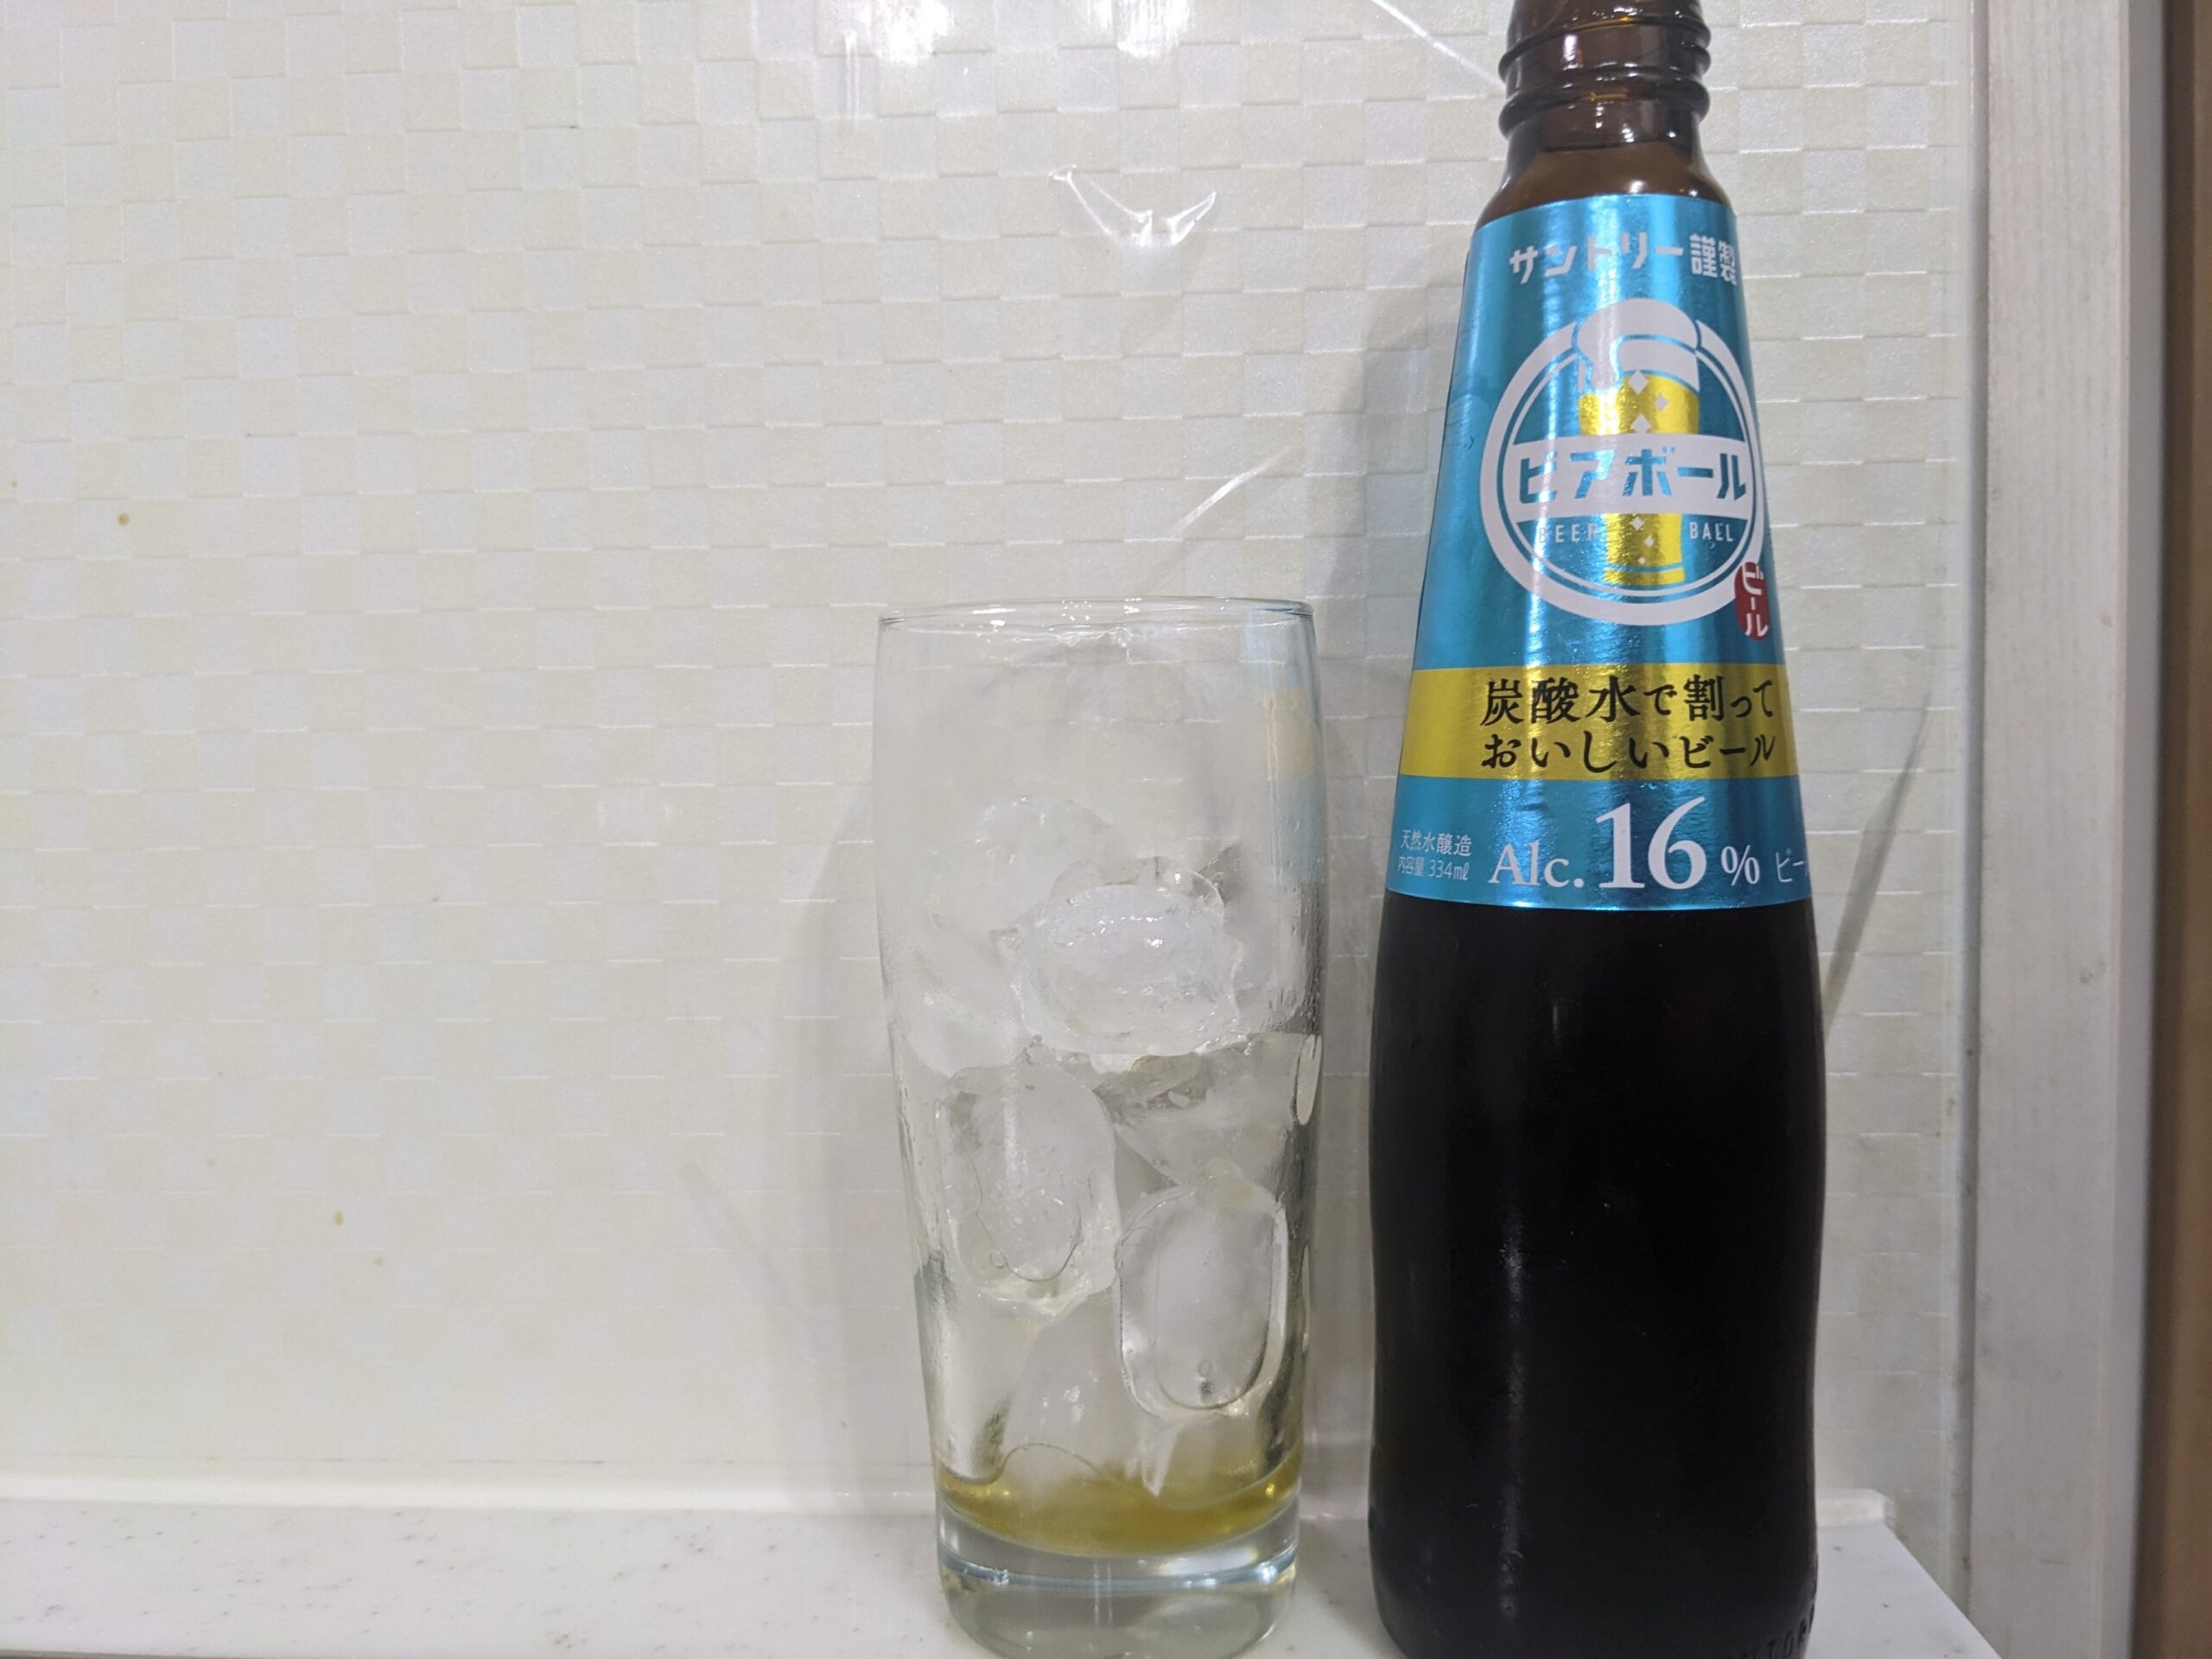 「ビアボール炭酸水割り」が飲み終えたグラスとその空き瓶